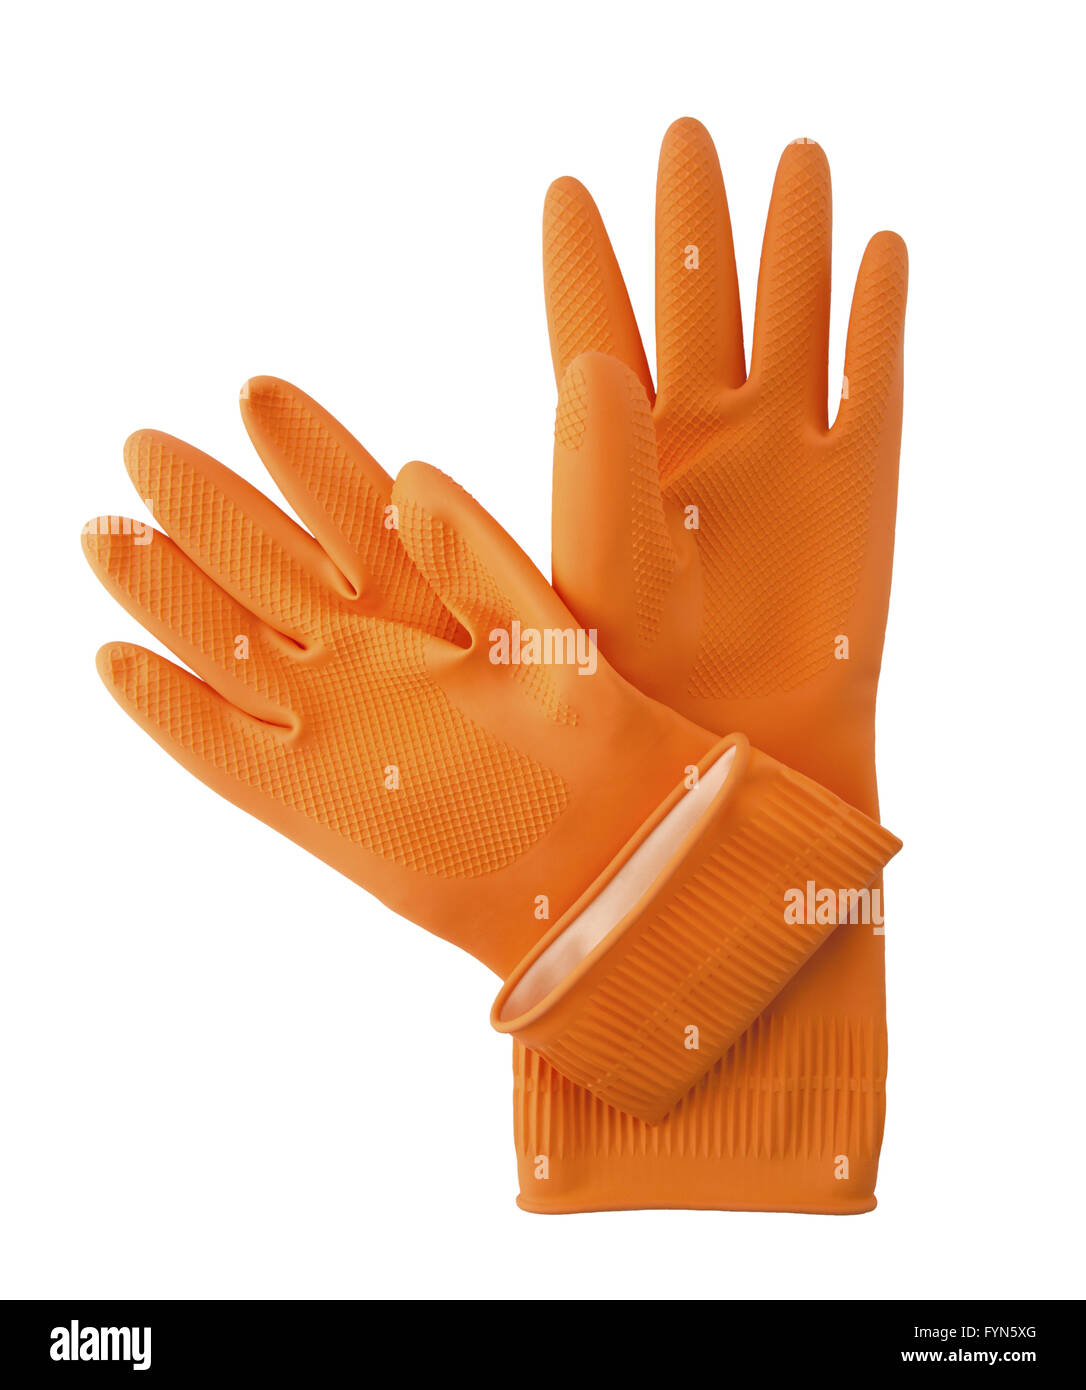 Household gloves. Stock Photo